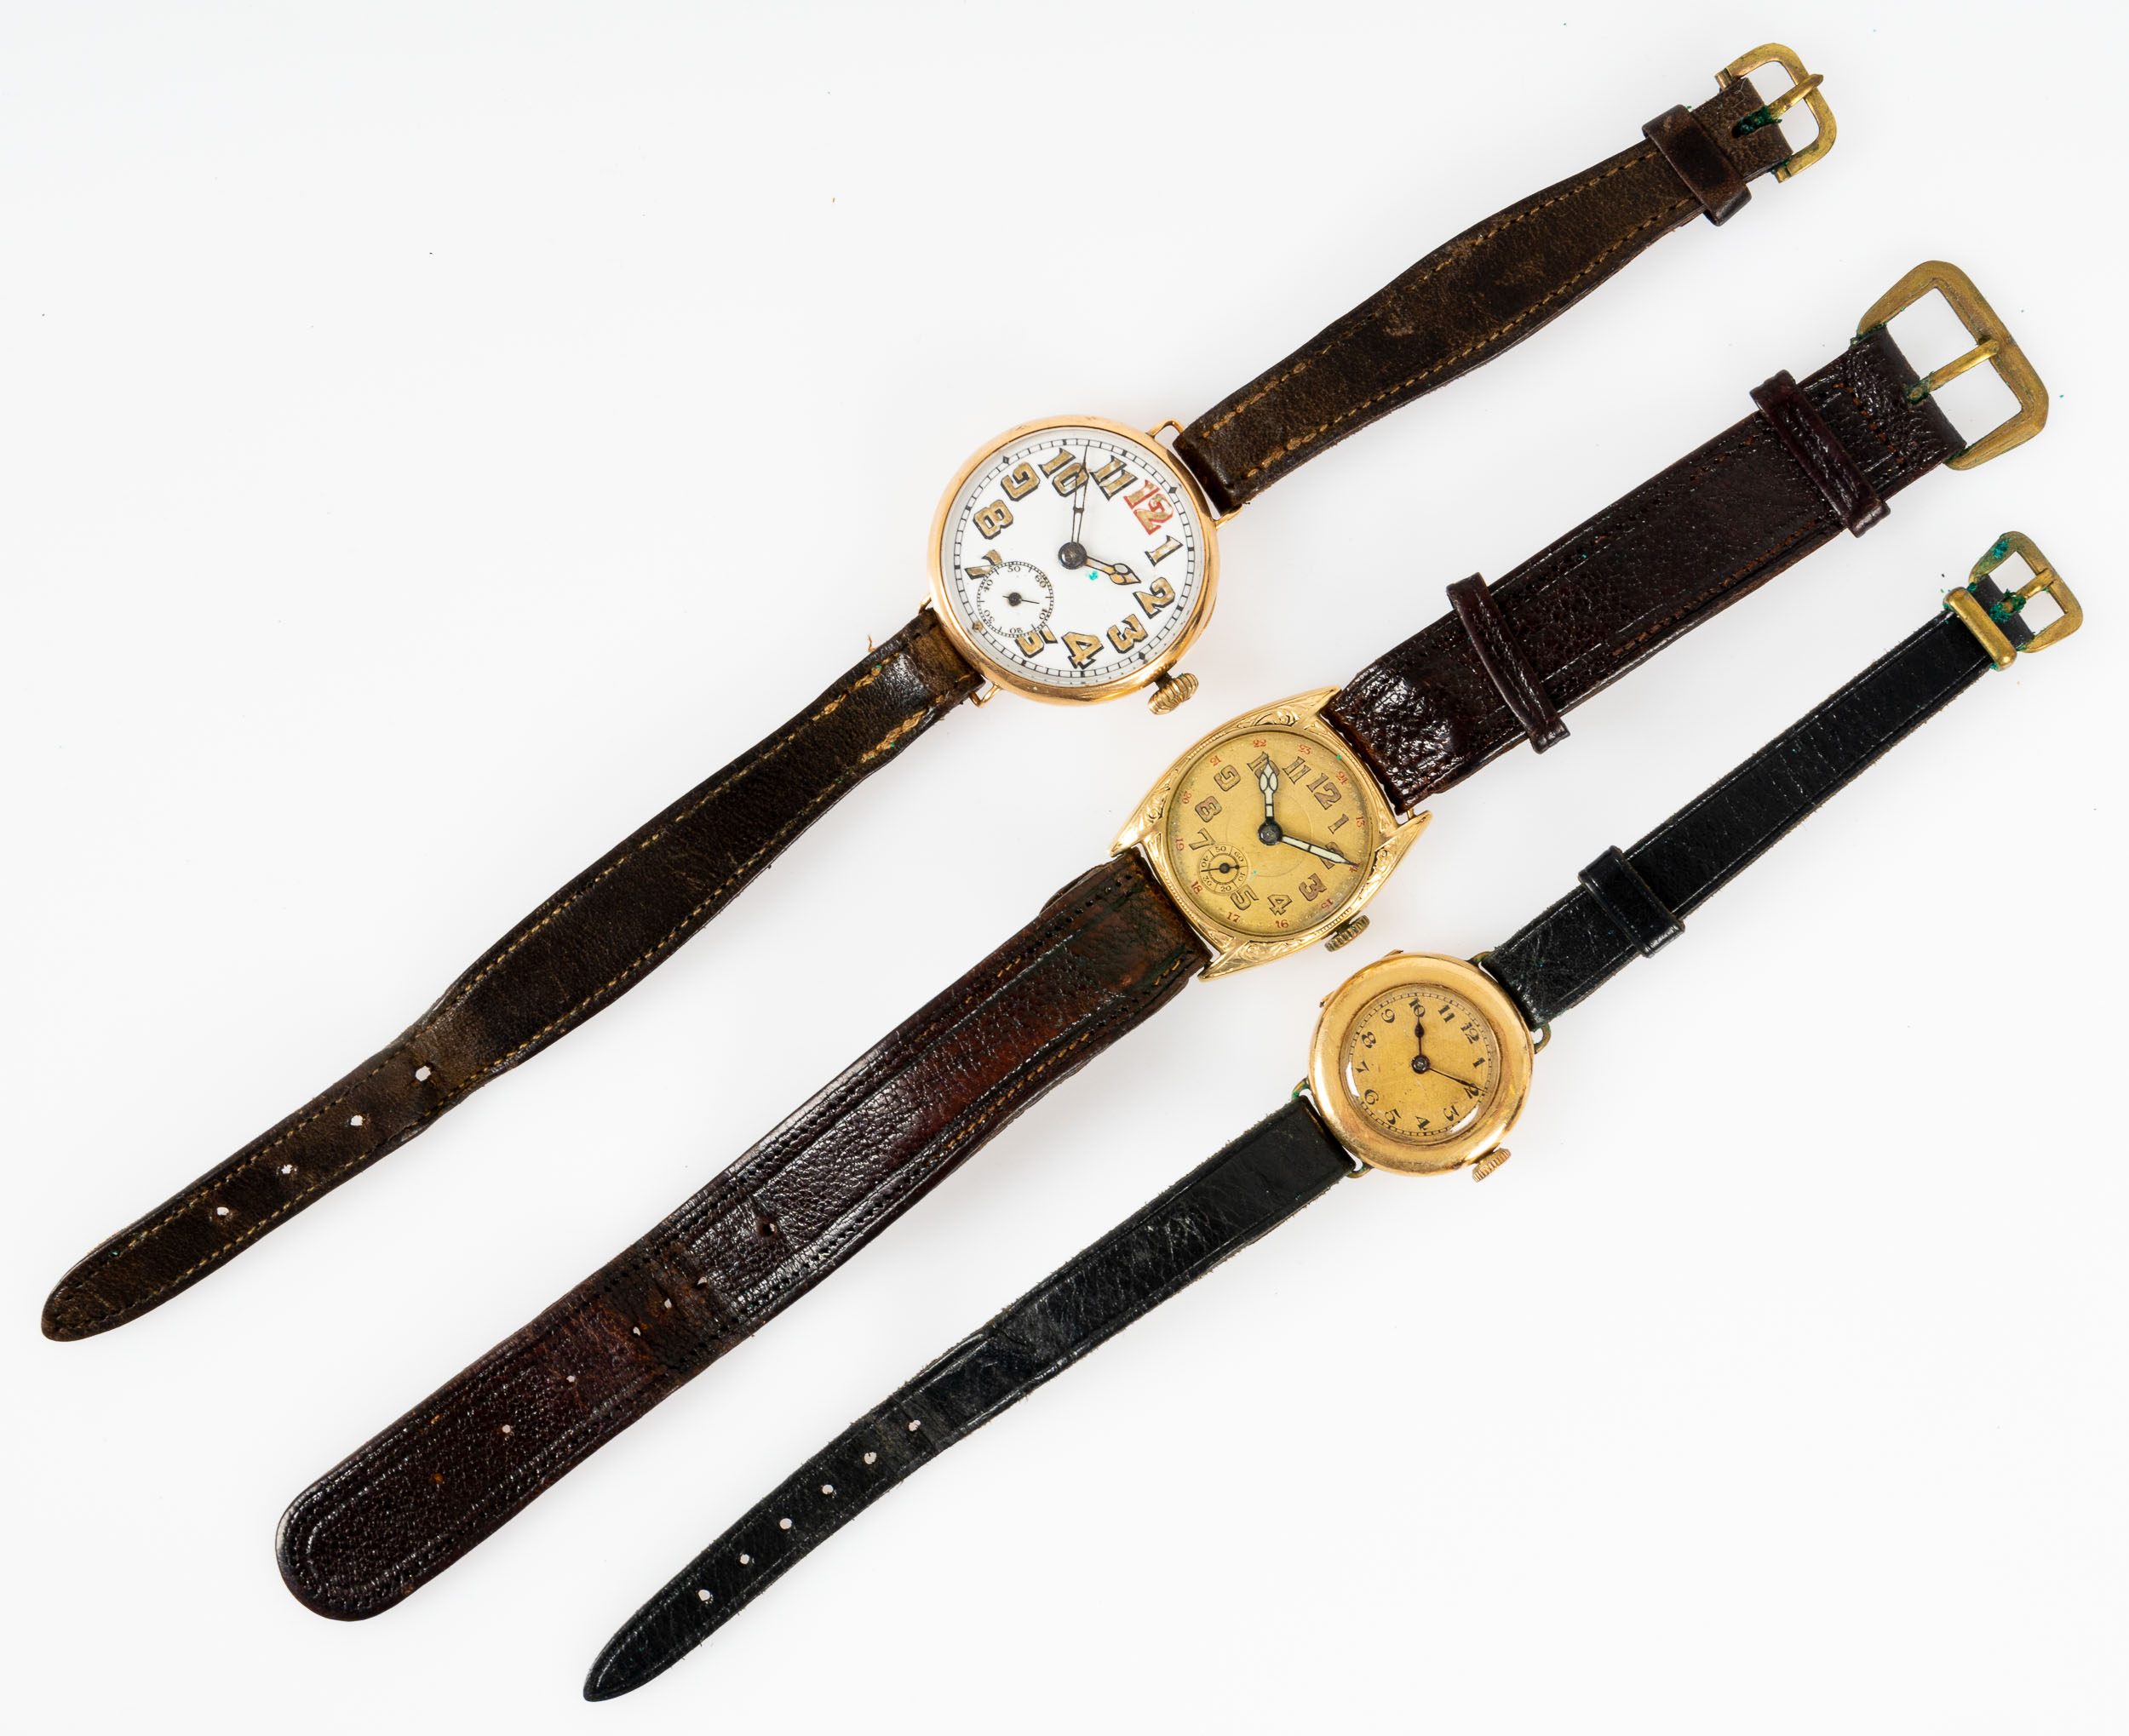 3teiliges Konvolut versch. Damen- bzw. Unisex-Armbanduhren der 1920er und 30er Jahre, Gehäuse in 14